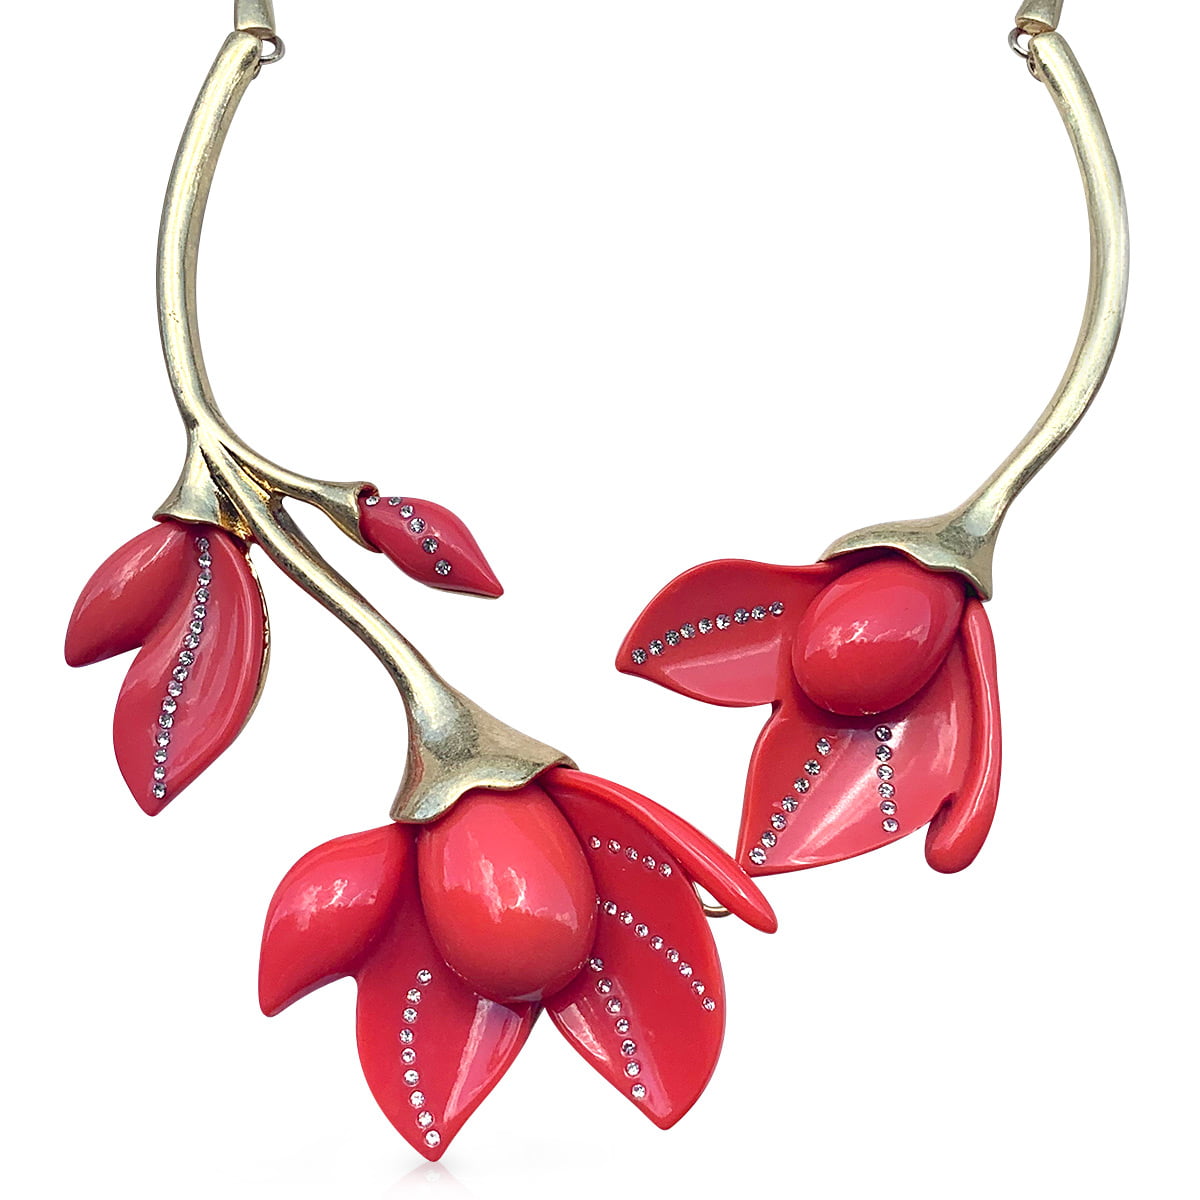 Pink coral necklace by Oscar de la Renta